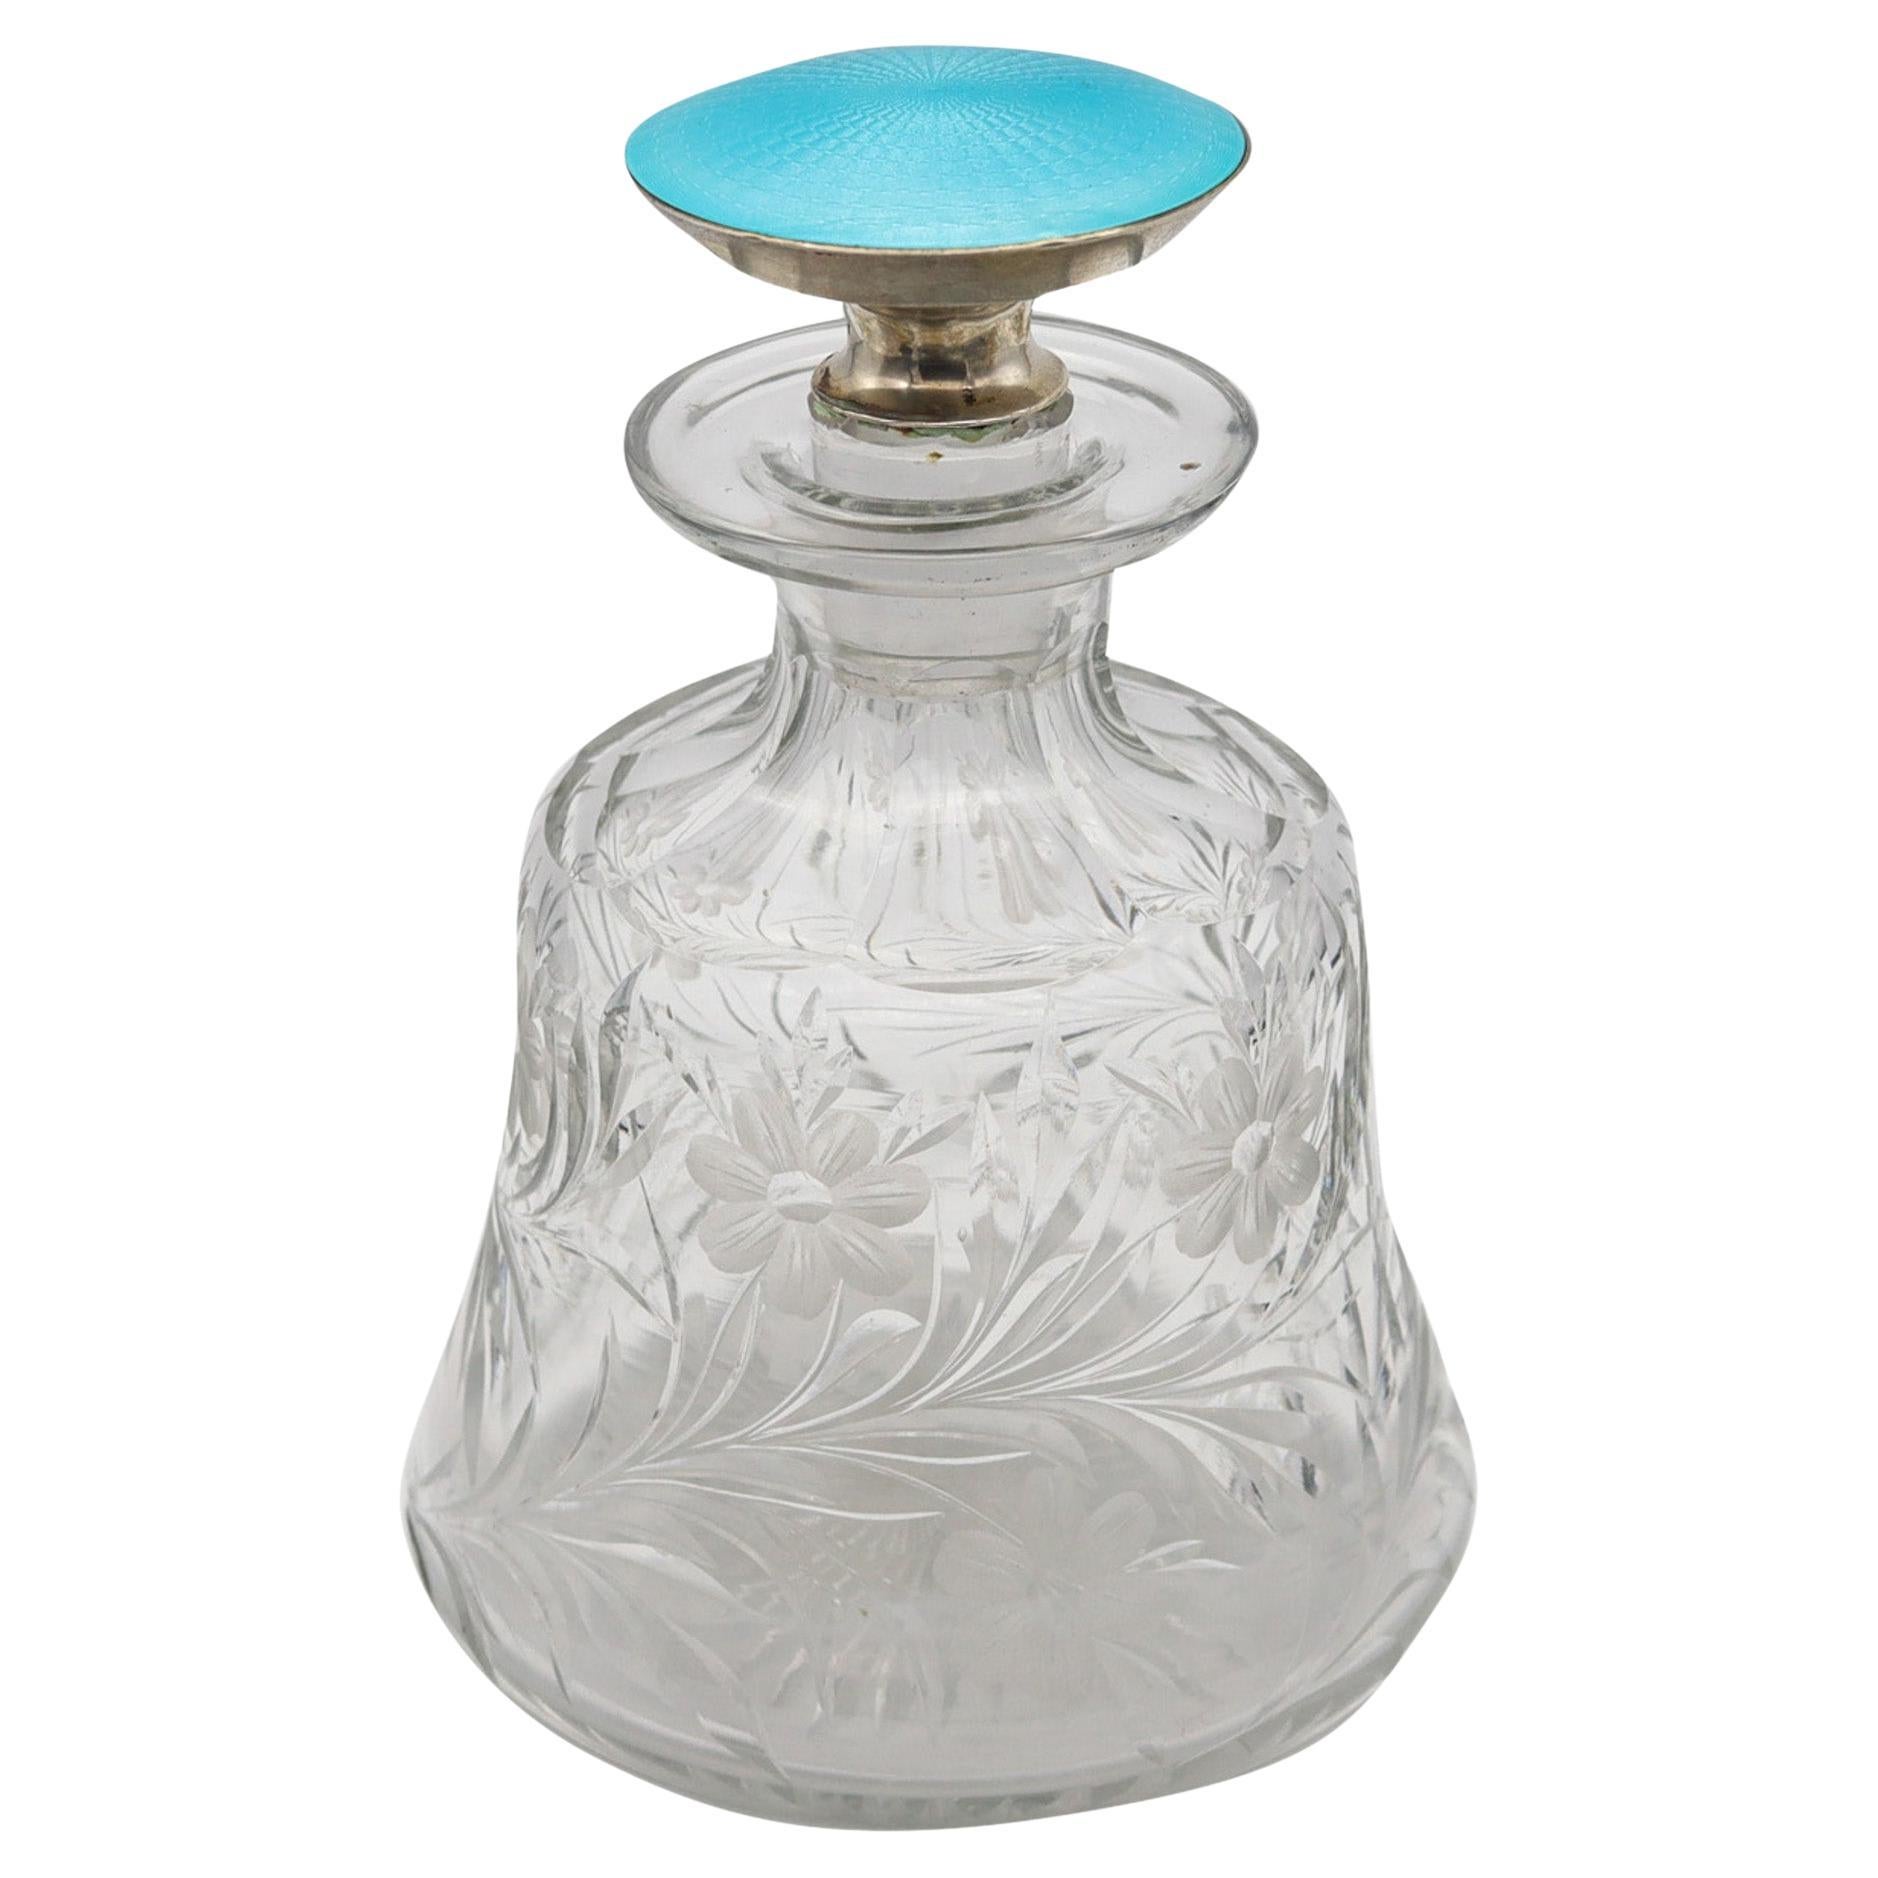 Edwardian 1905 Guilloché Enamel Perfume Bottle In .925 Sterling And Cut Glass